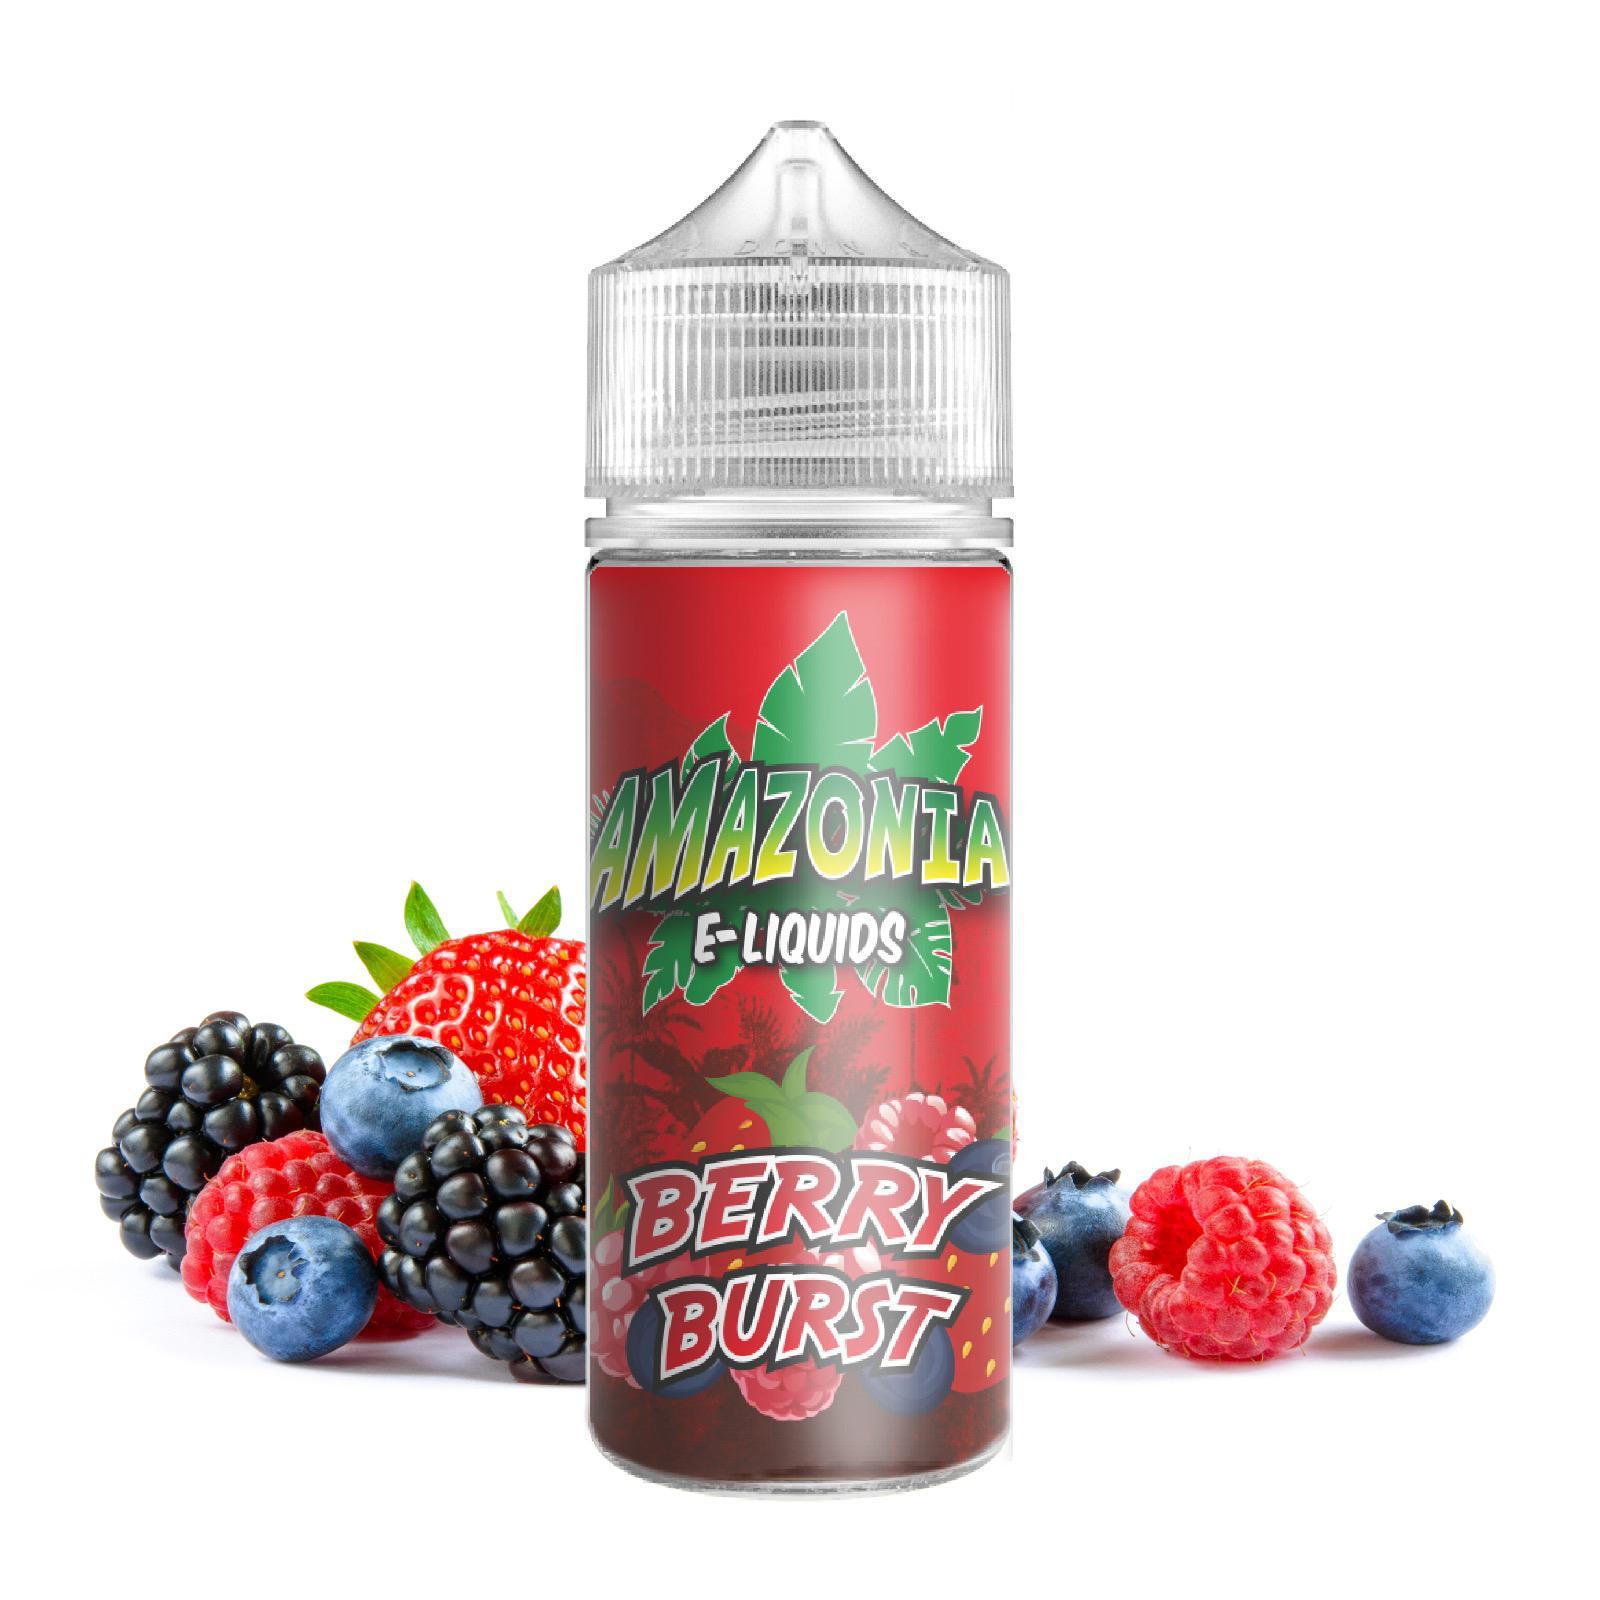 Berry Burst Amazonia Juice 120ml